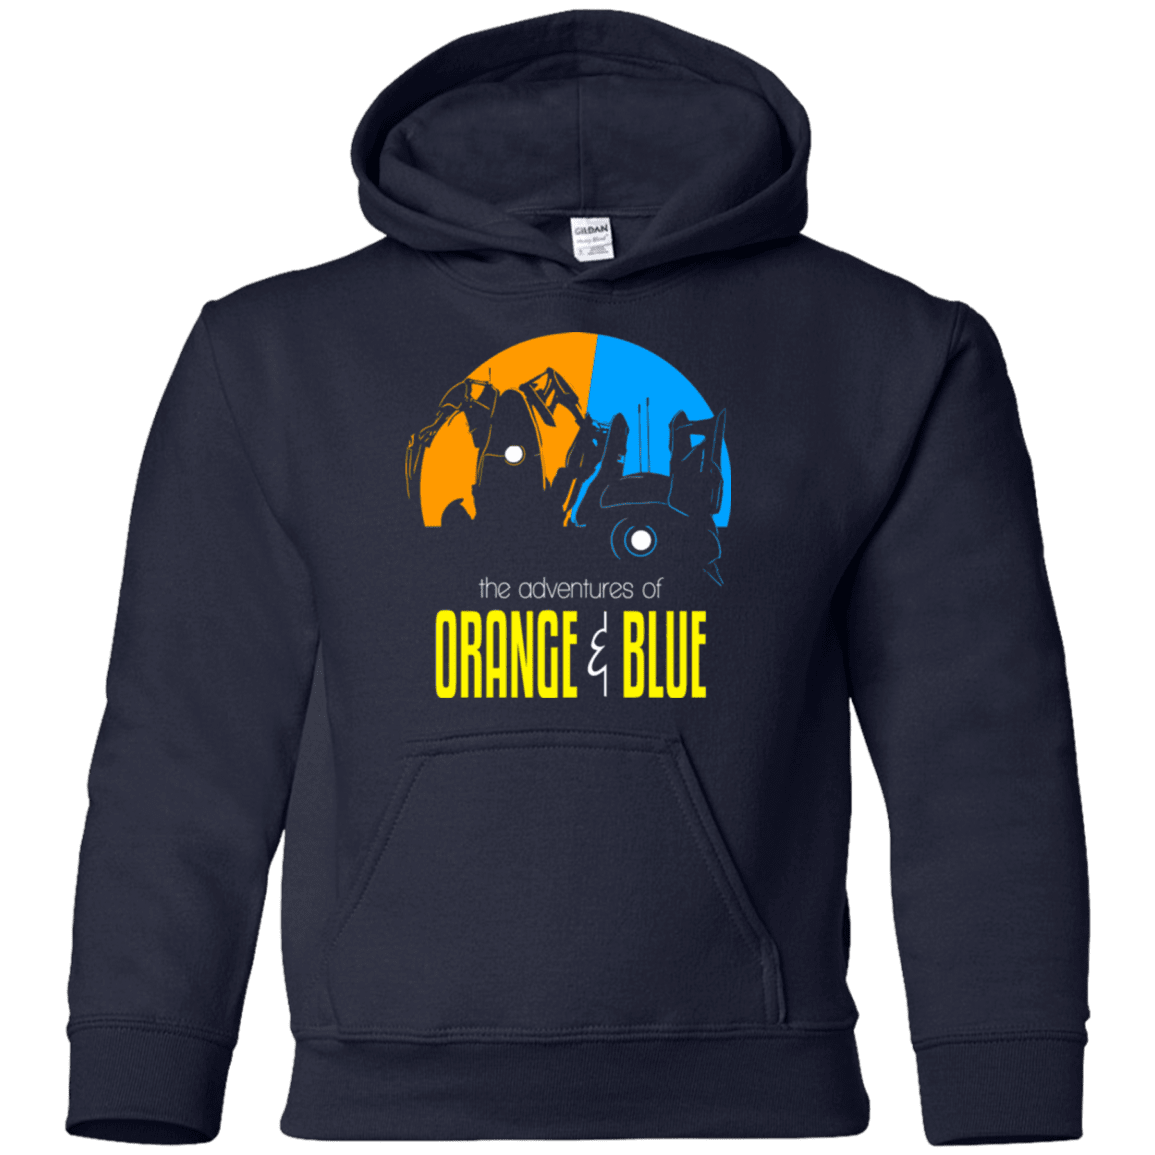 Sweatshirts Navy / YS Adventure Orange and Blue Youth Hoodie